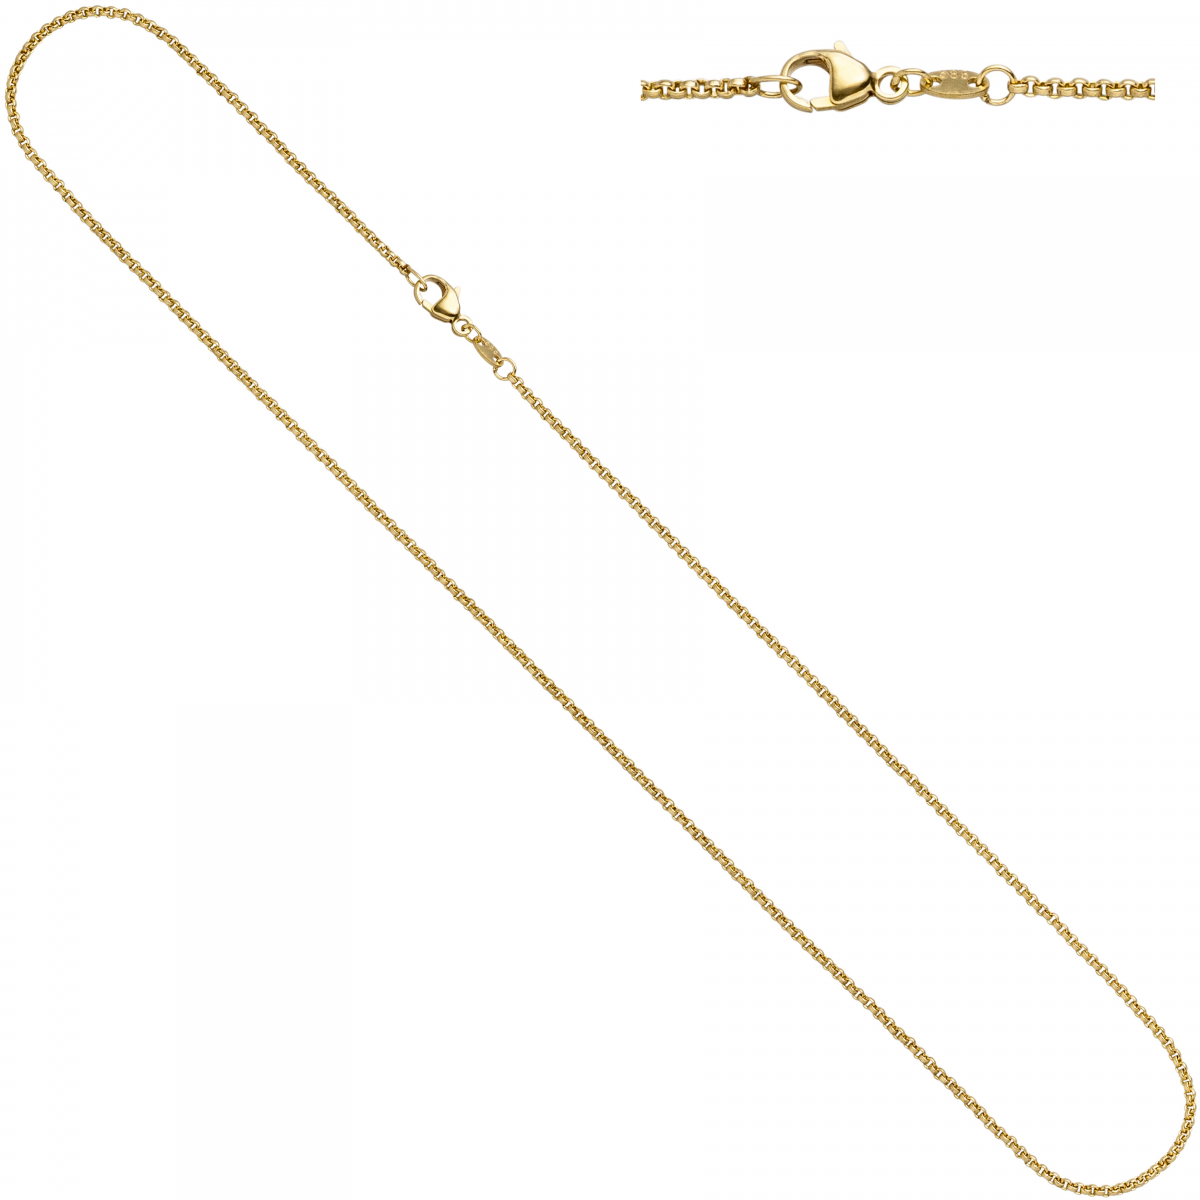 Erbskette 585 Gelbgold 1,5 mm 42 cm Gold Kette Halskette Goldkette Karabiner